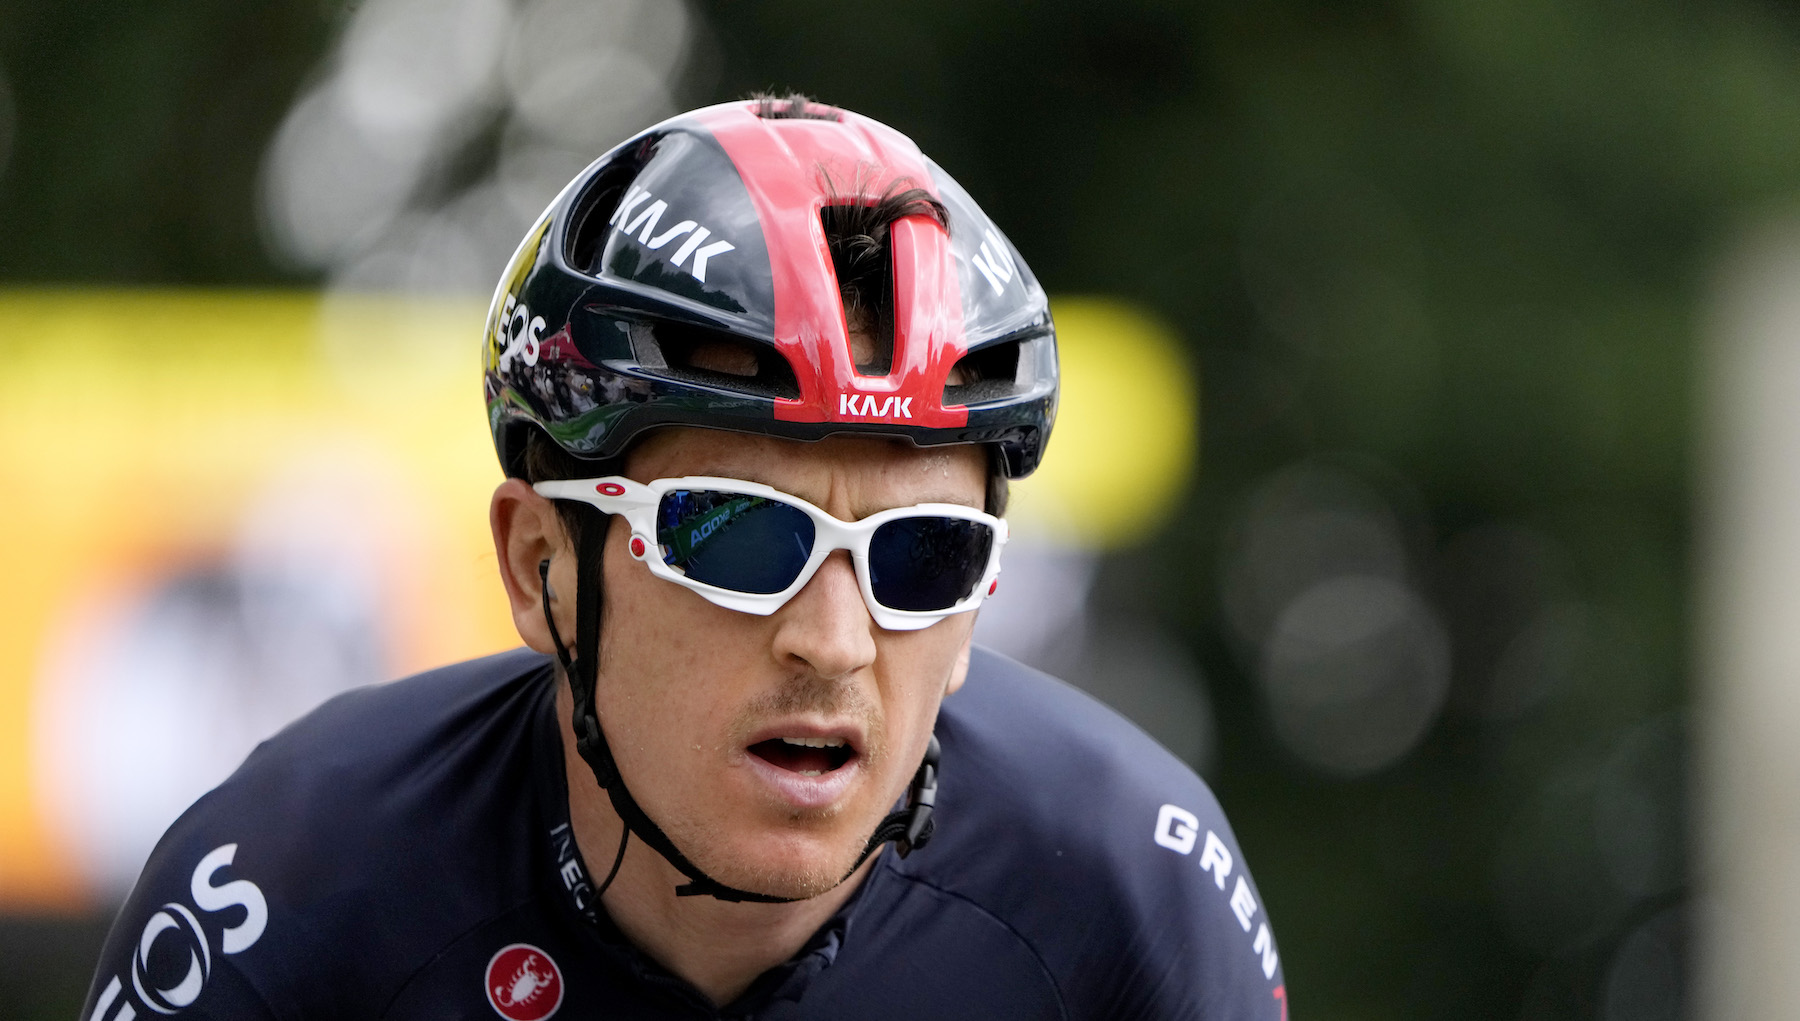 Geraint Thomas reacciona a la victoria de etapa del Tour de Francia de Mark Cavendish